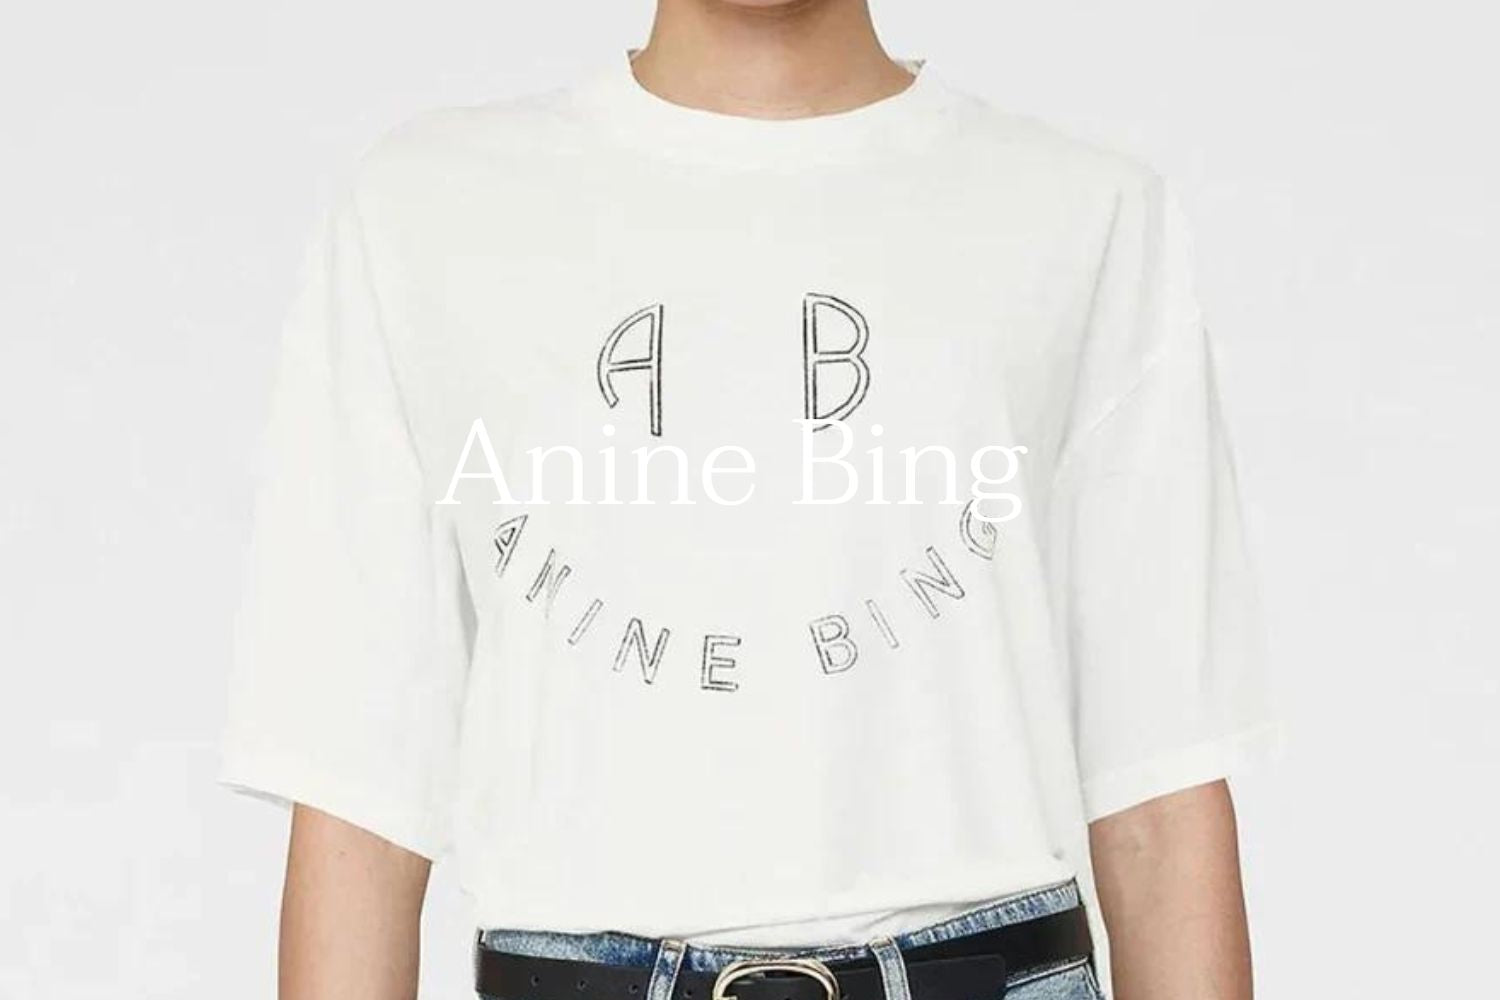 Anine Bing – Page 3 – La Bohème Lifestyle